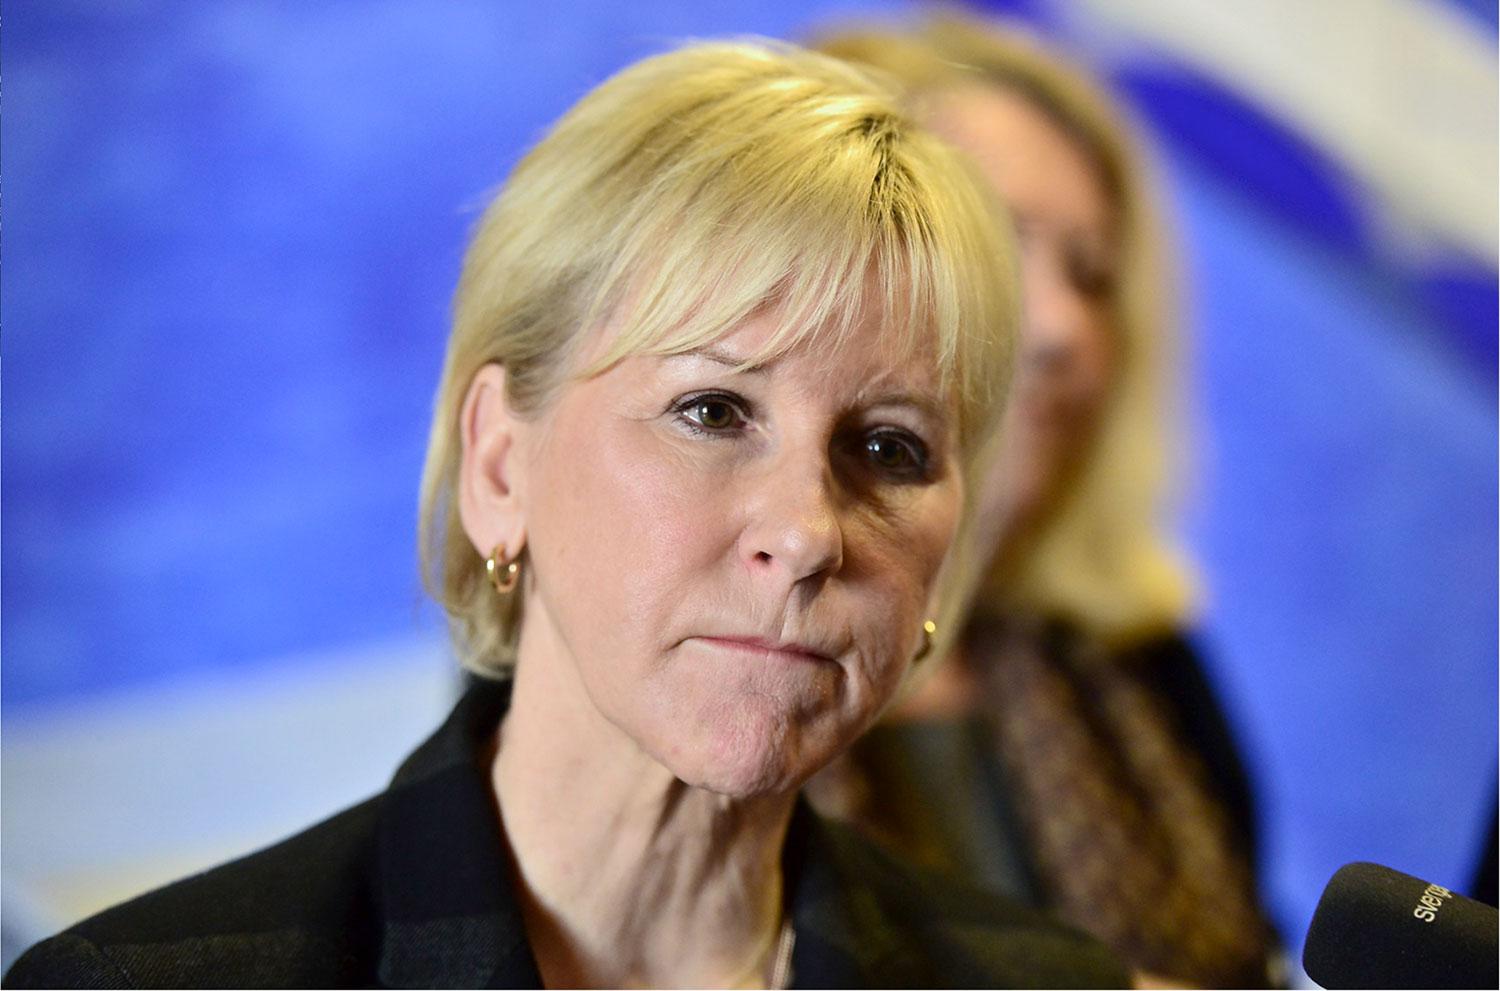 Utrikesminister Margot Wallström.